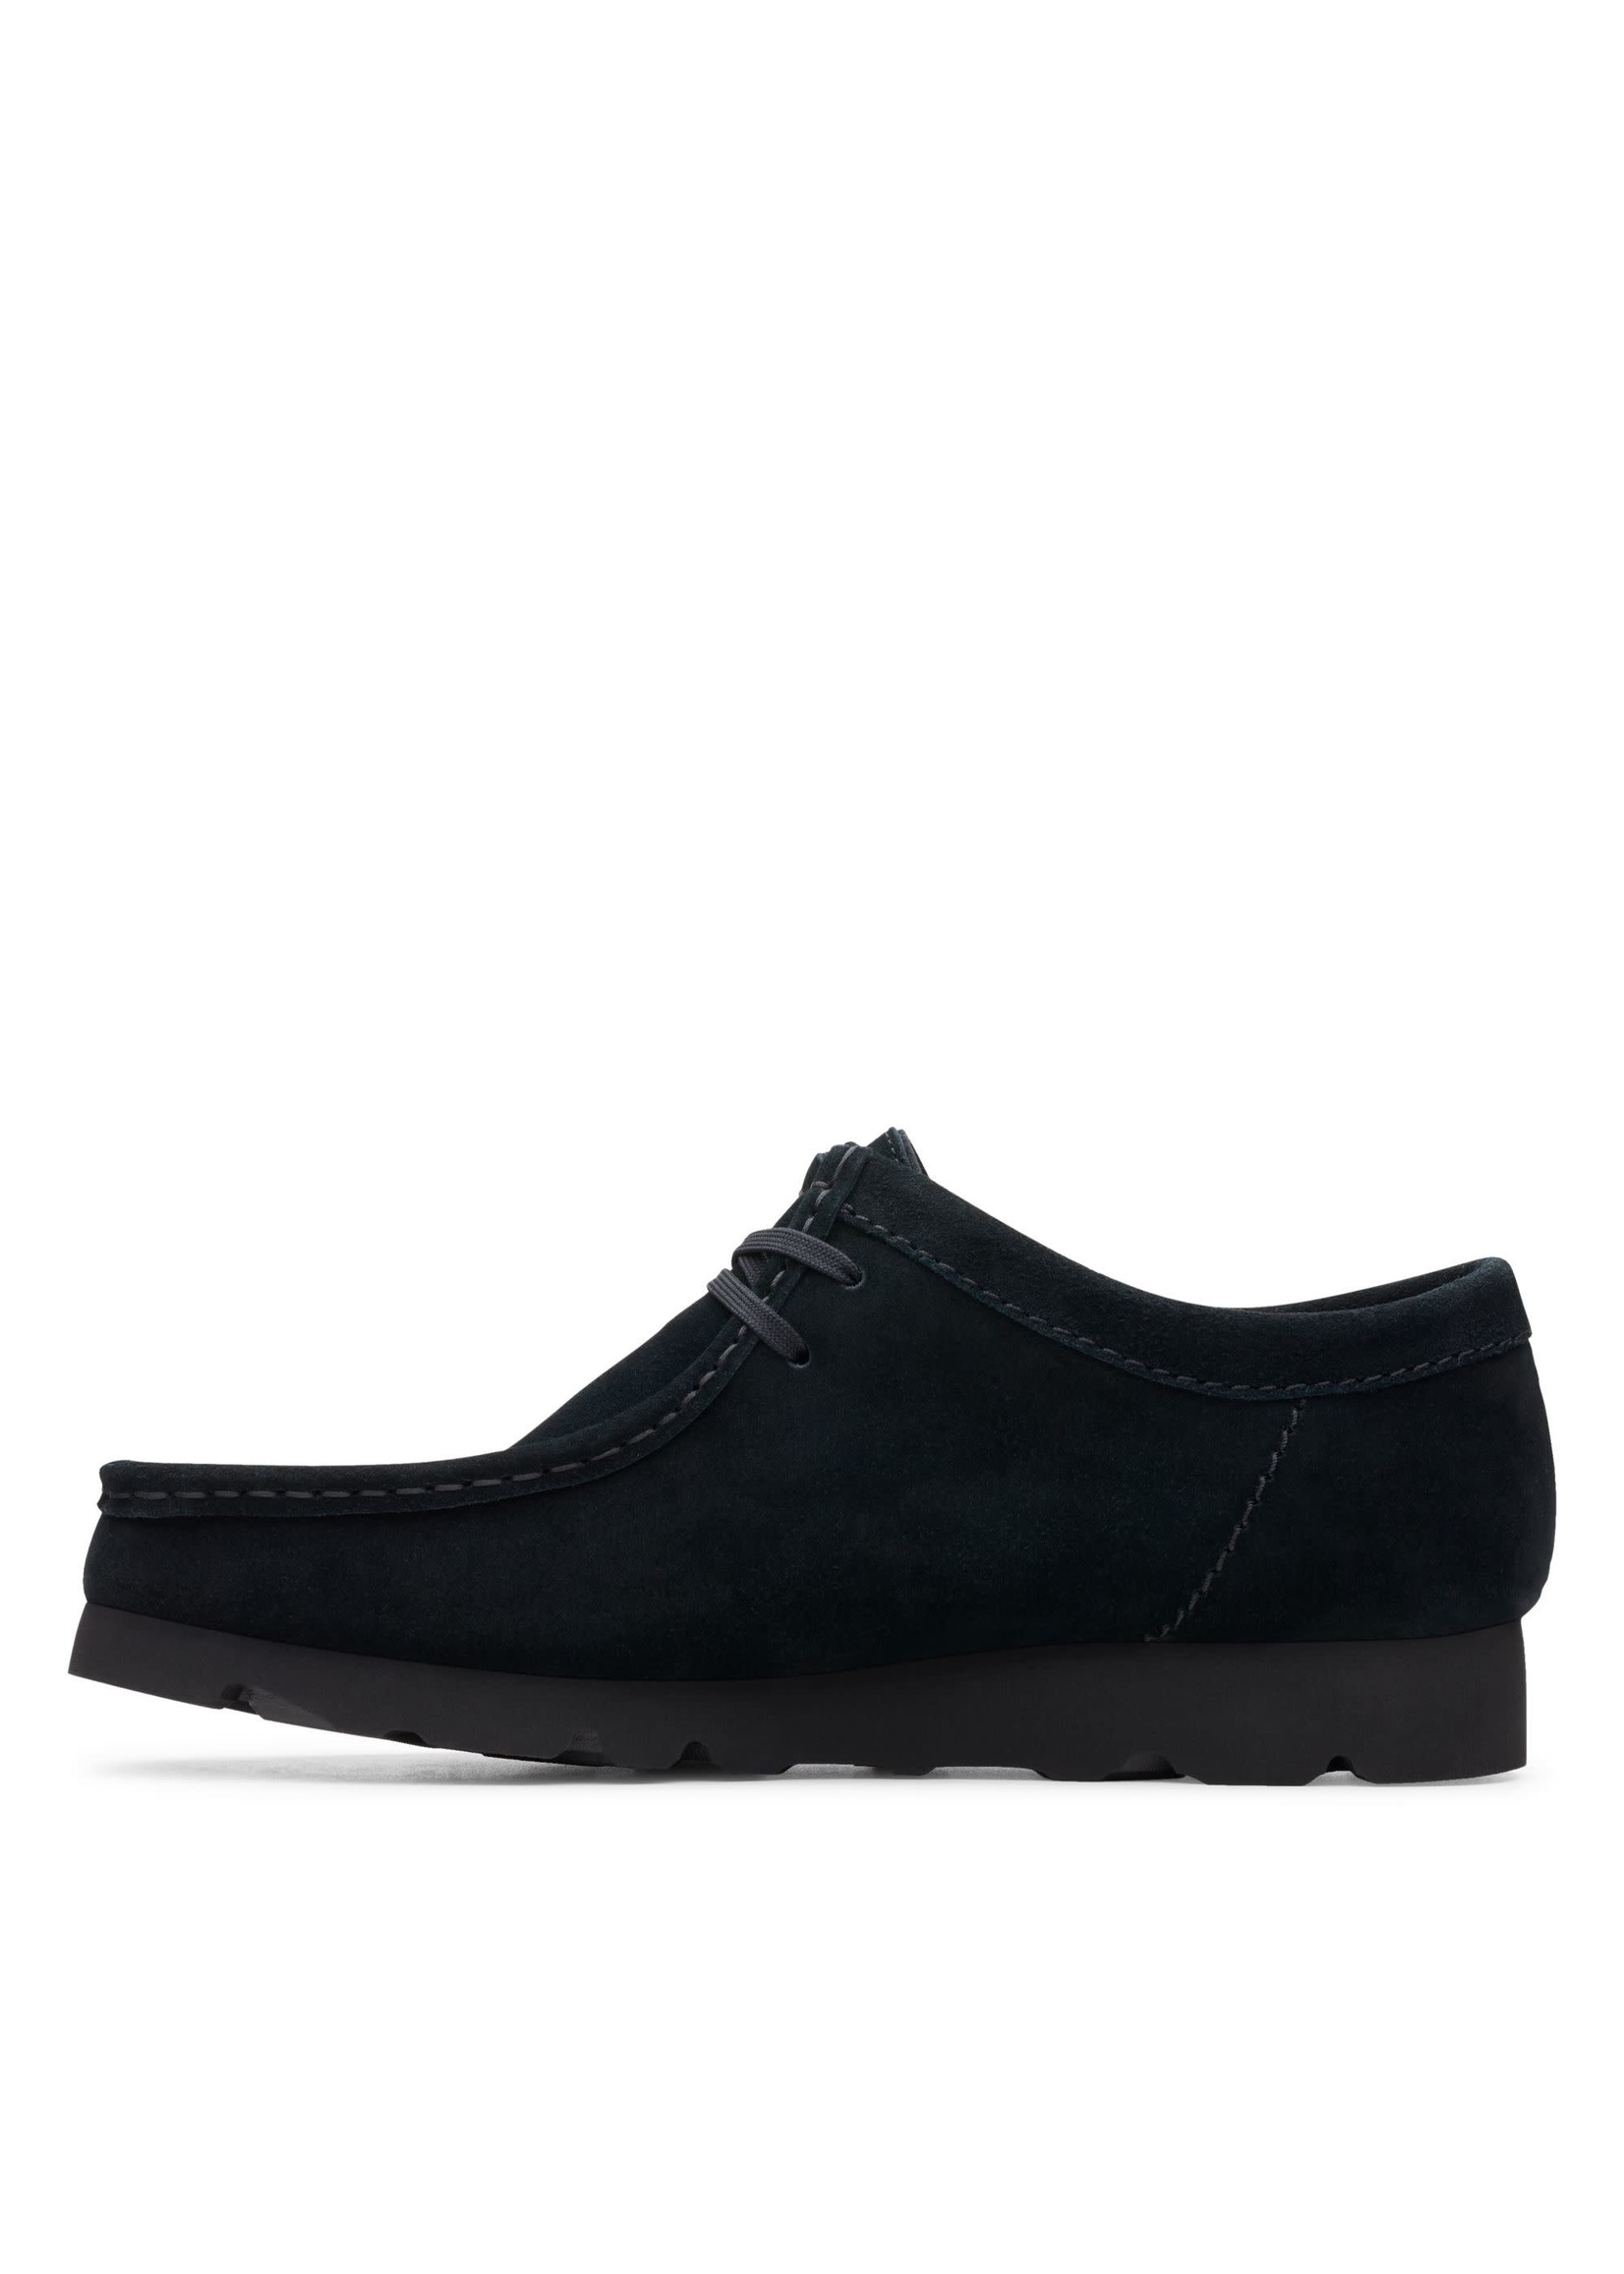 Men's Wallabee GTX Shoes, Black Suede - SHOE PLUS